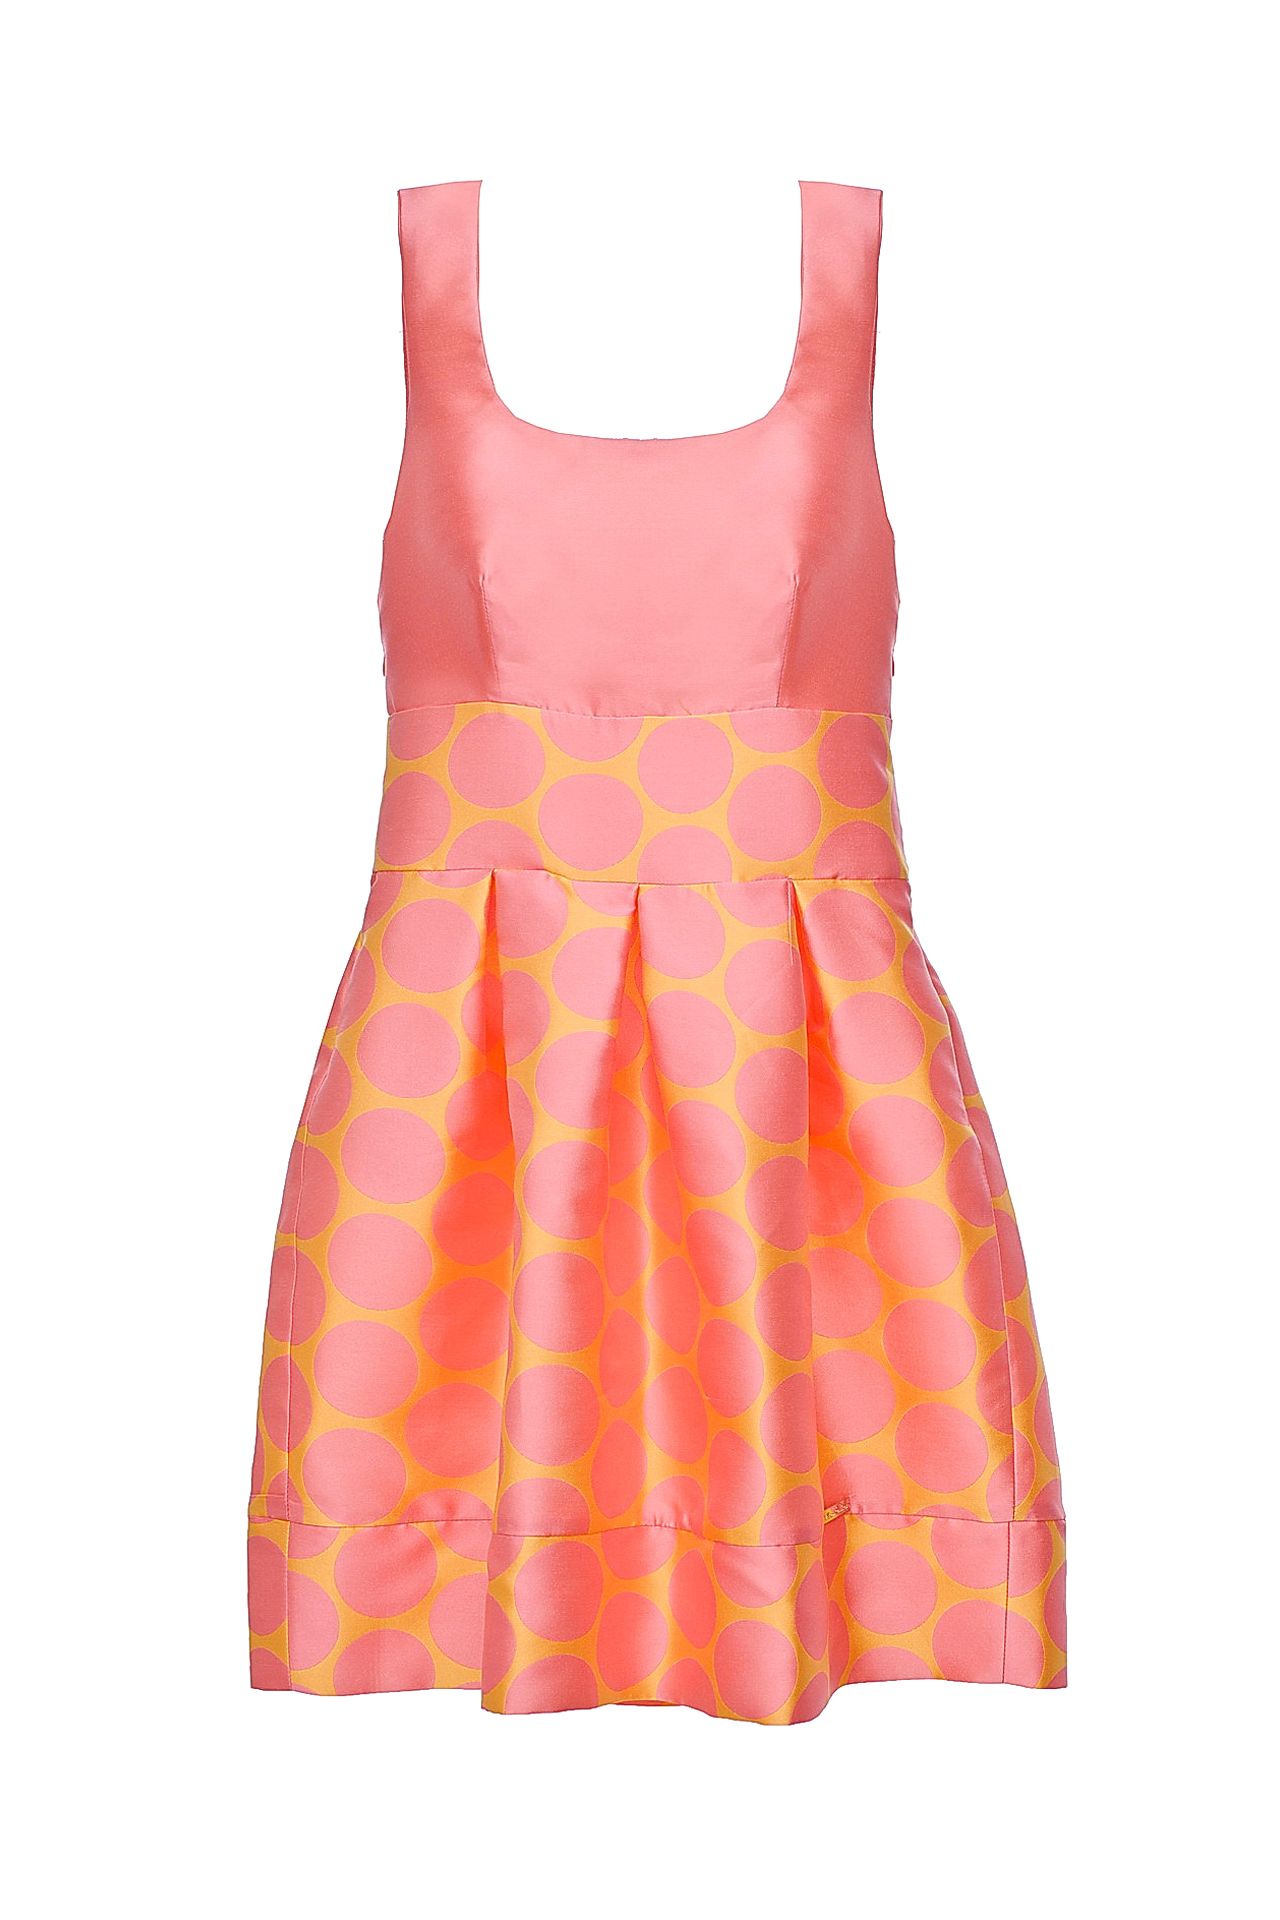 Одежда женская Платье BABYLON W LES FEMMES (S852/14.2). Купить за 9750 руб.